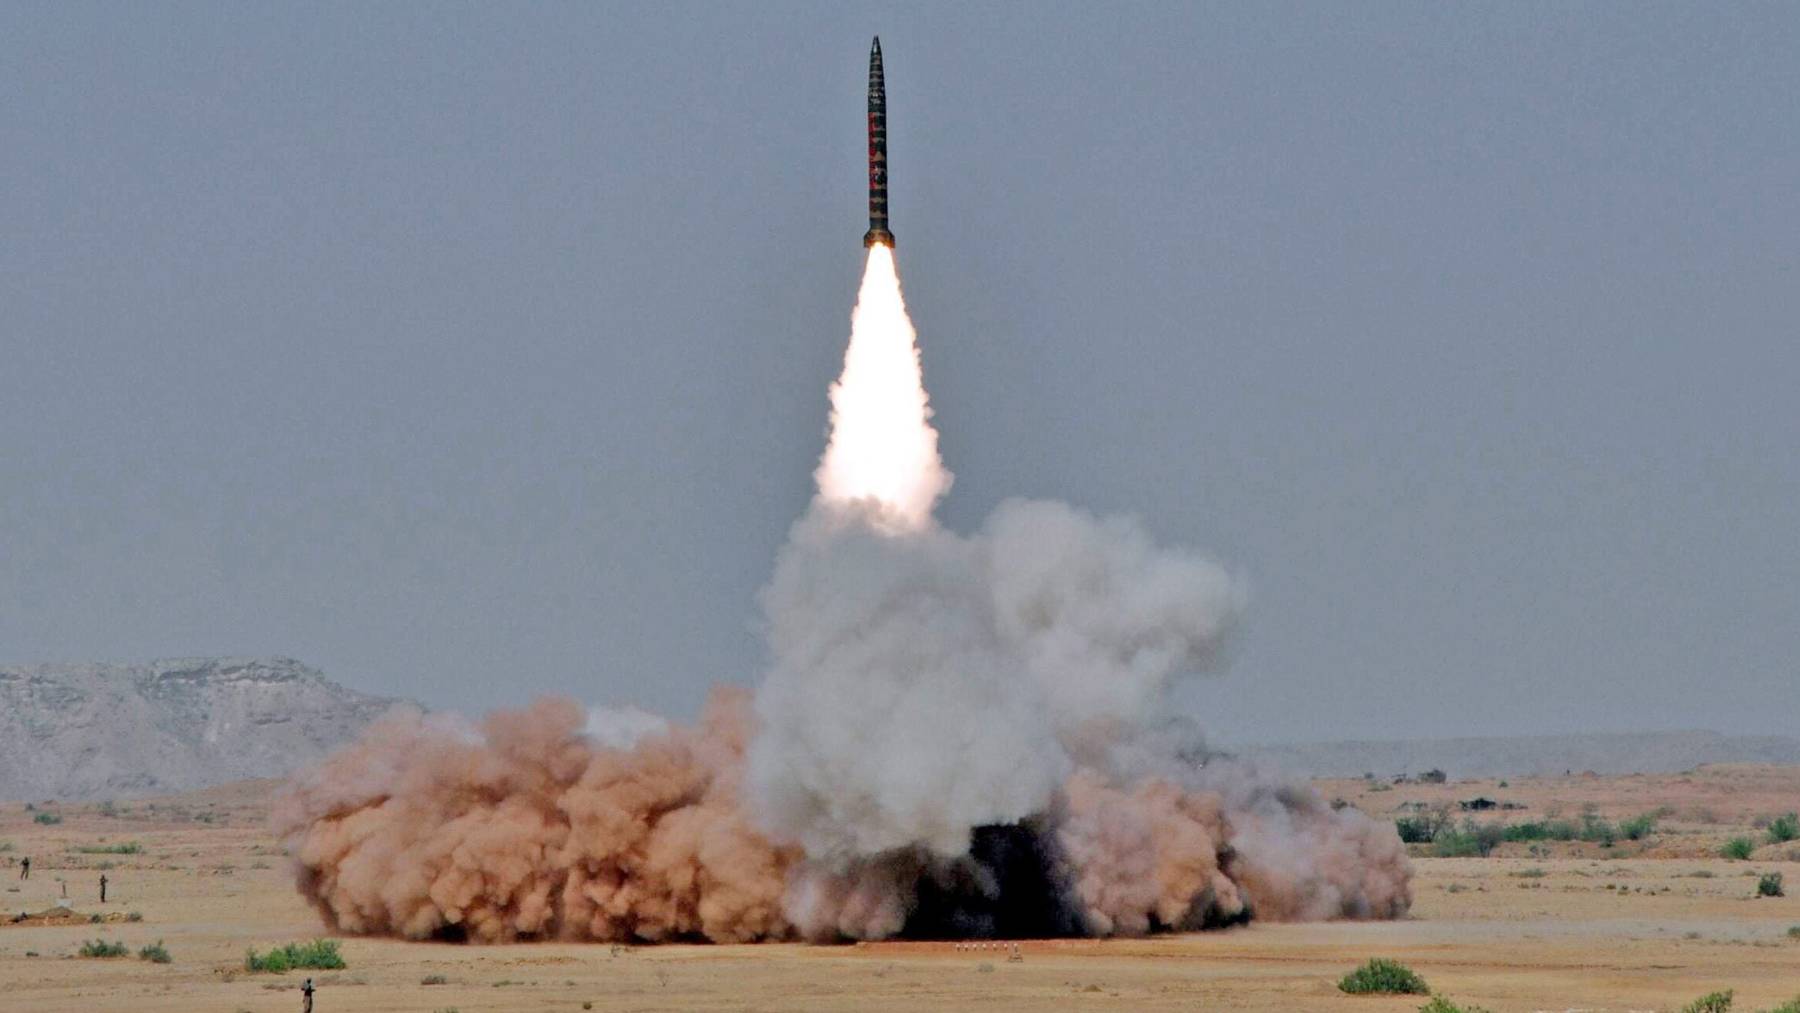 Ballistische Raketen können Trägersysteme für Massenvernichtungswaffen sein.